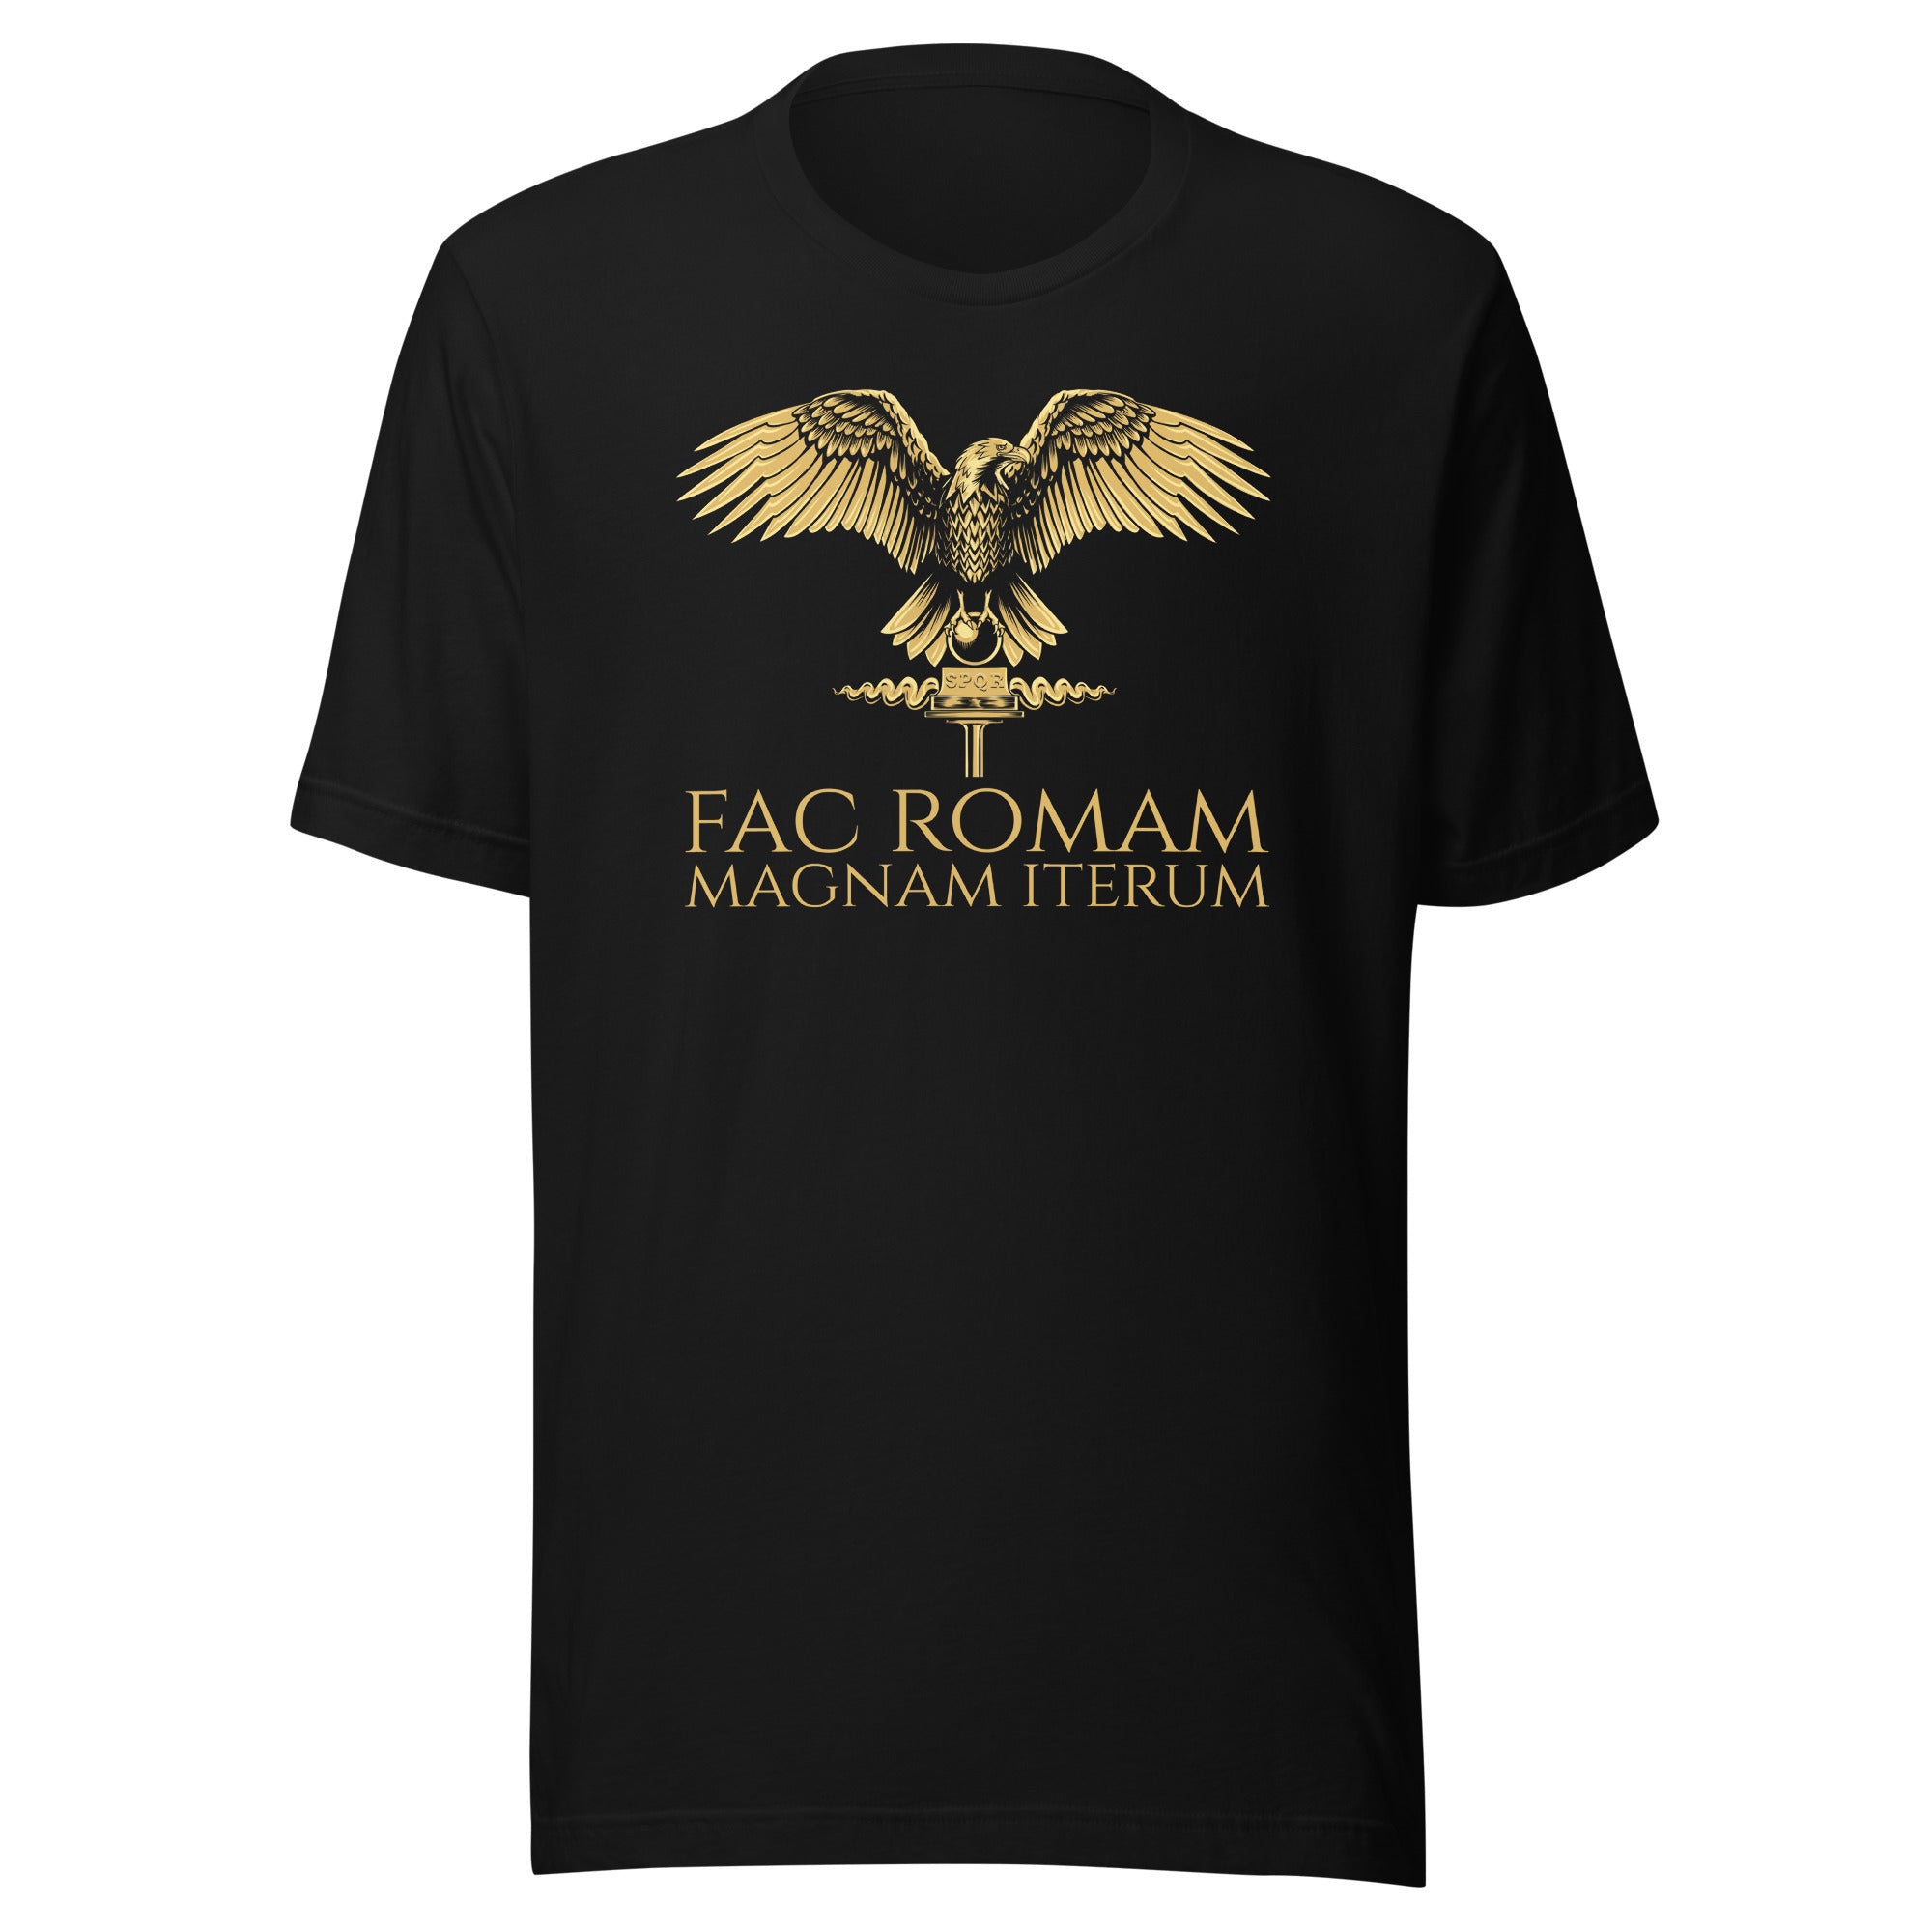 Fac Romam Magnam Iterum - Make Rome Great Again - Latin Language Unisex T-Shirt